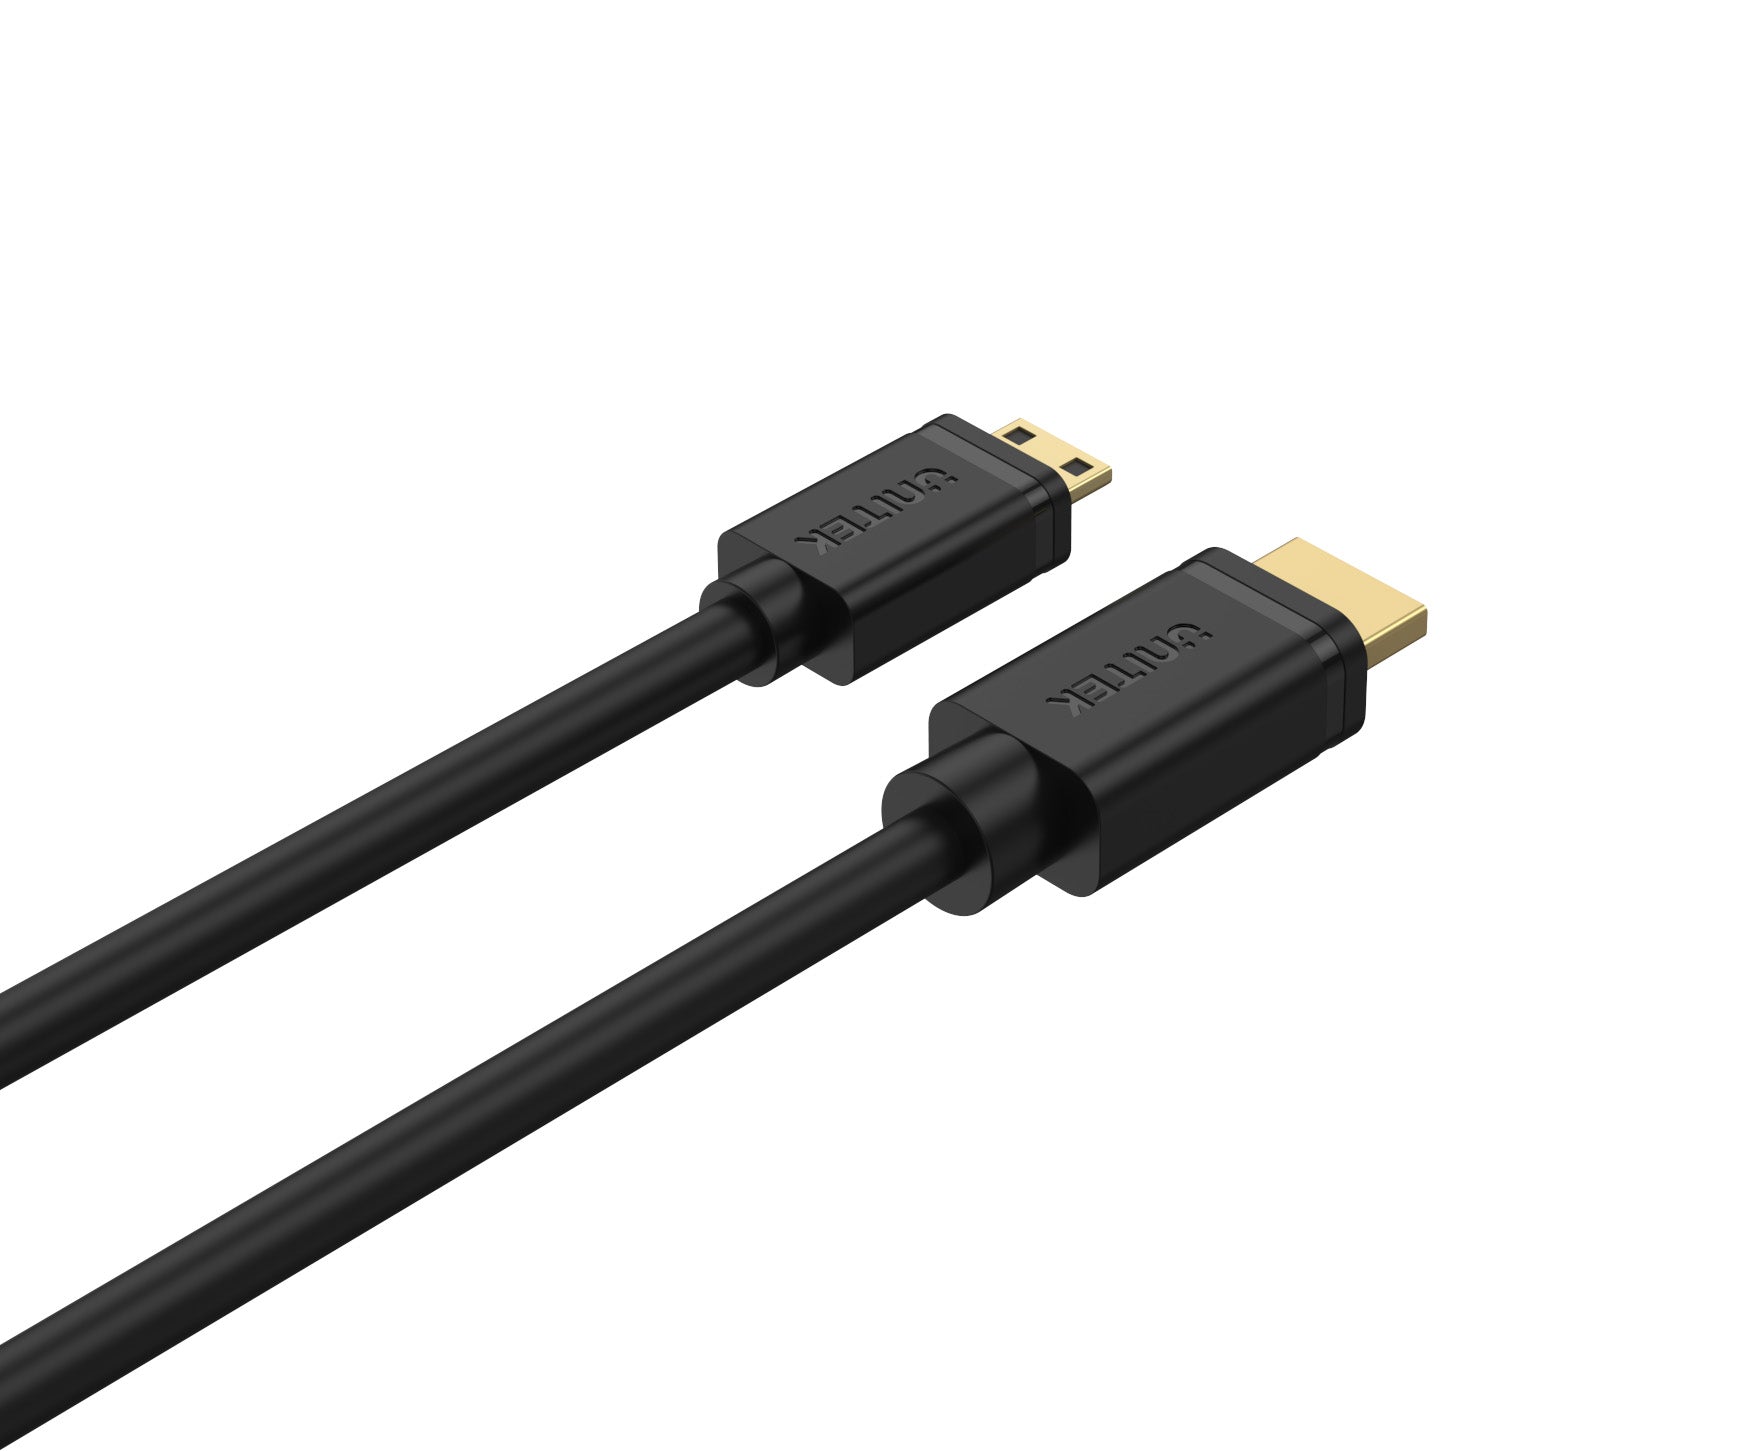 Unitek Y-C179 2M HDMI Male to Mini HDMI Male 4K Cable Connector